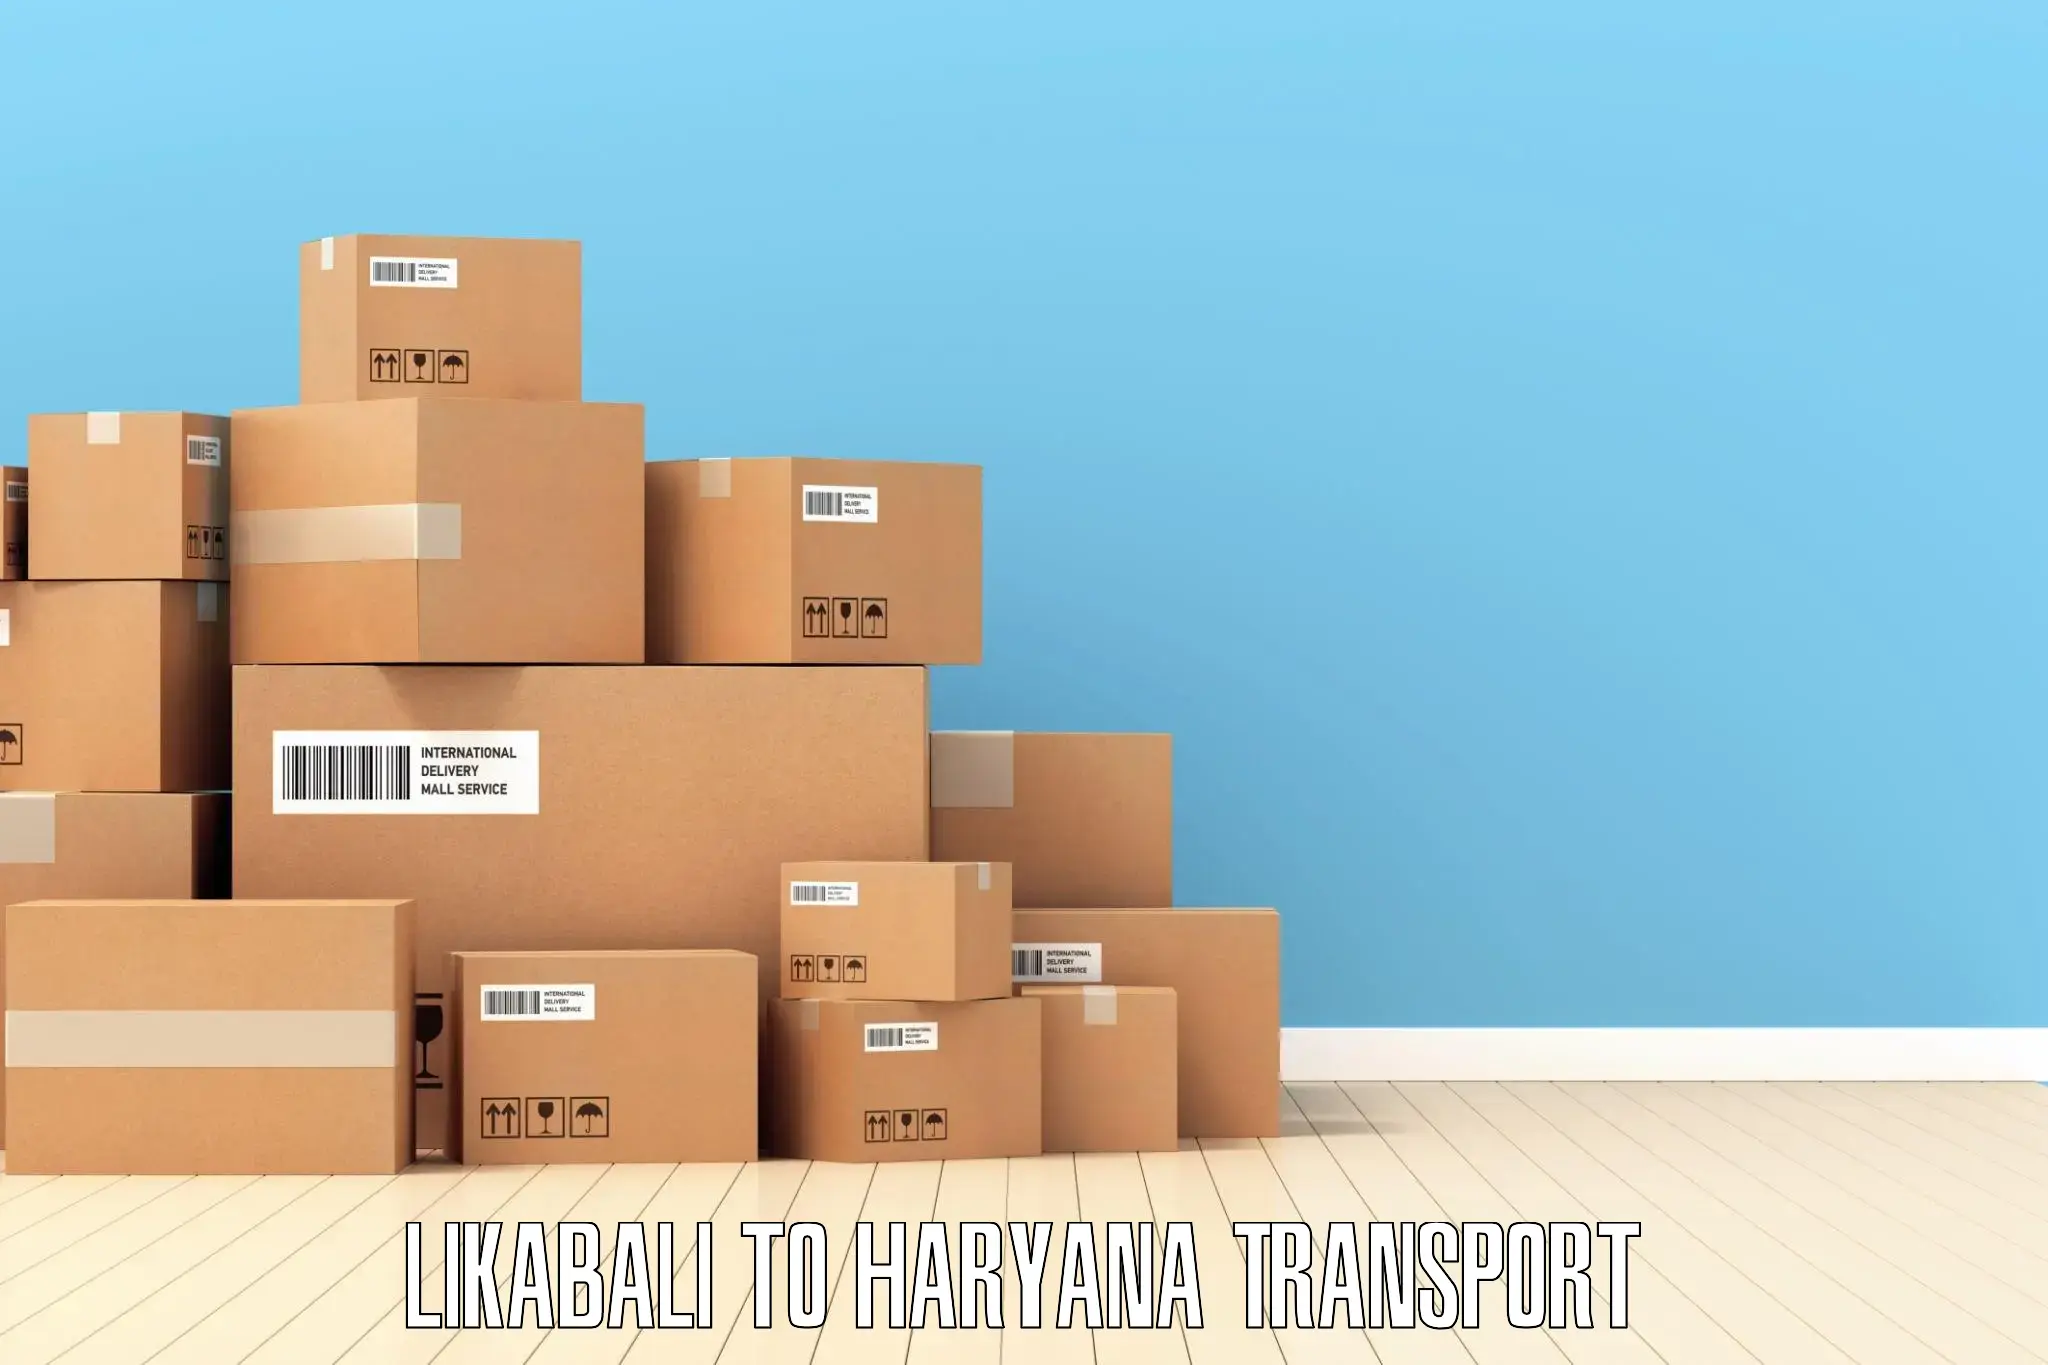 International cargo transportation services Likabali to Ambala